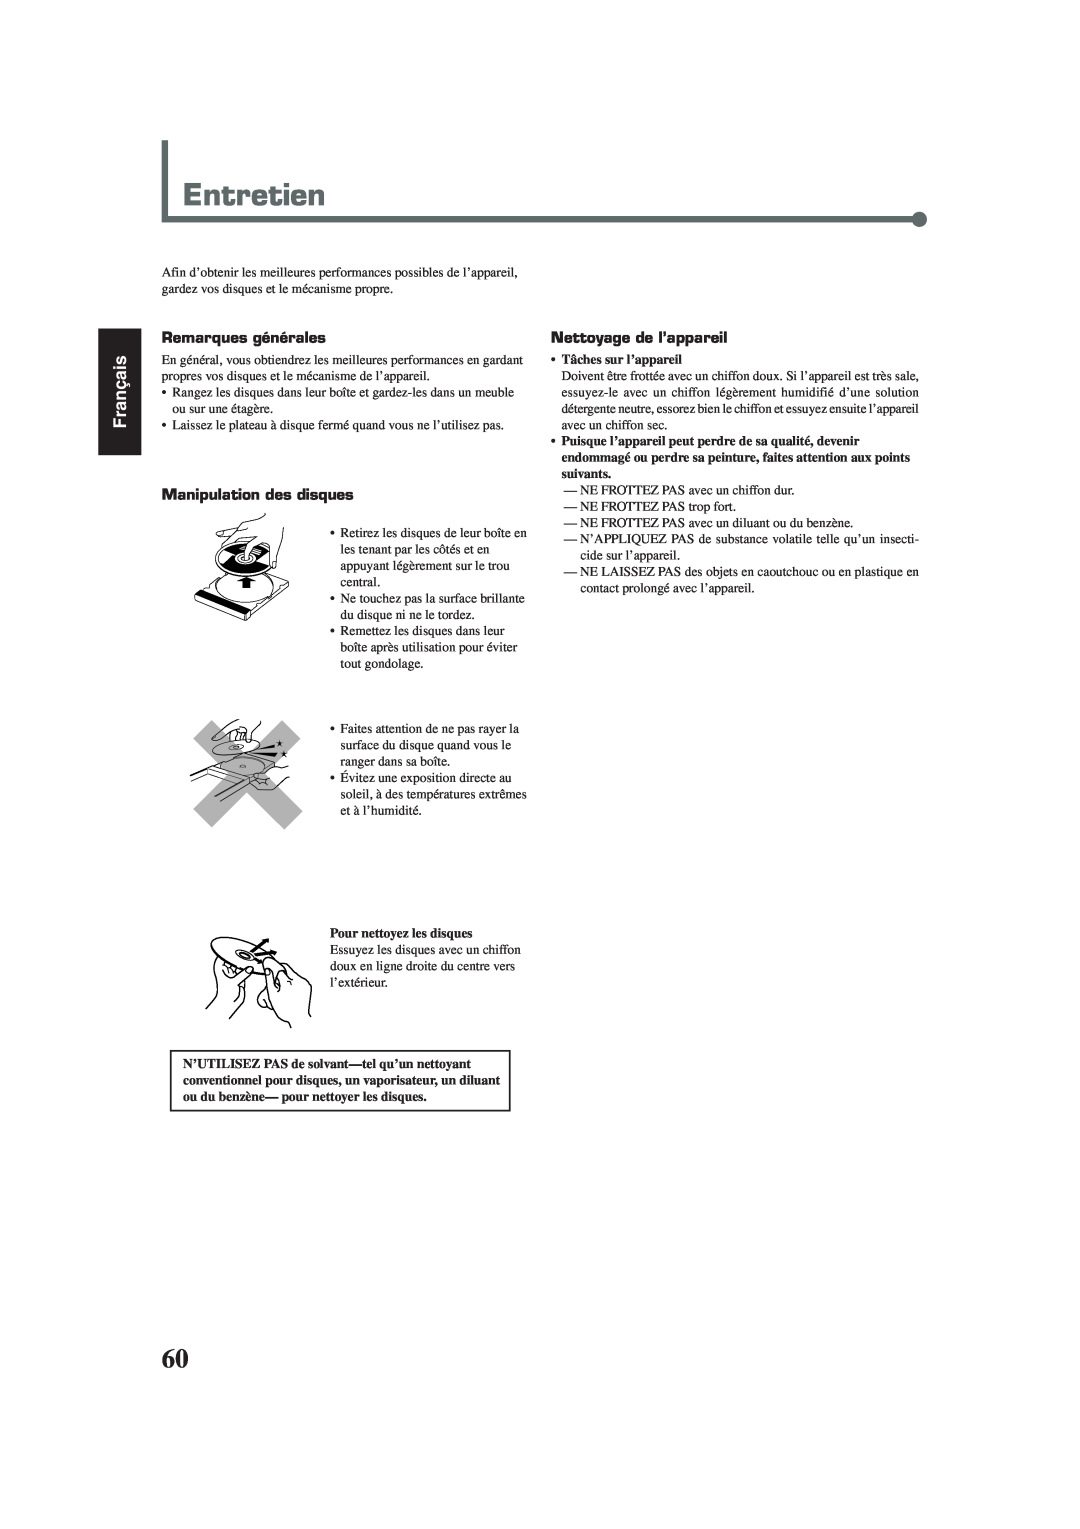 Lennox Hearth TH-A35 manual Entretien, Français, Remarques générales, Manipulation des disques, Nettoyage de l’appareil 